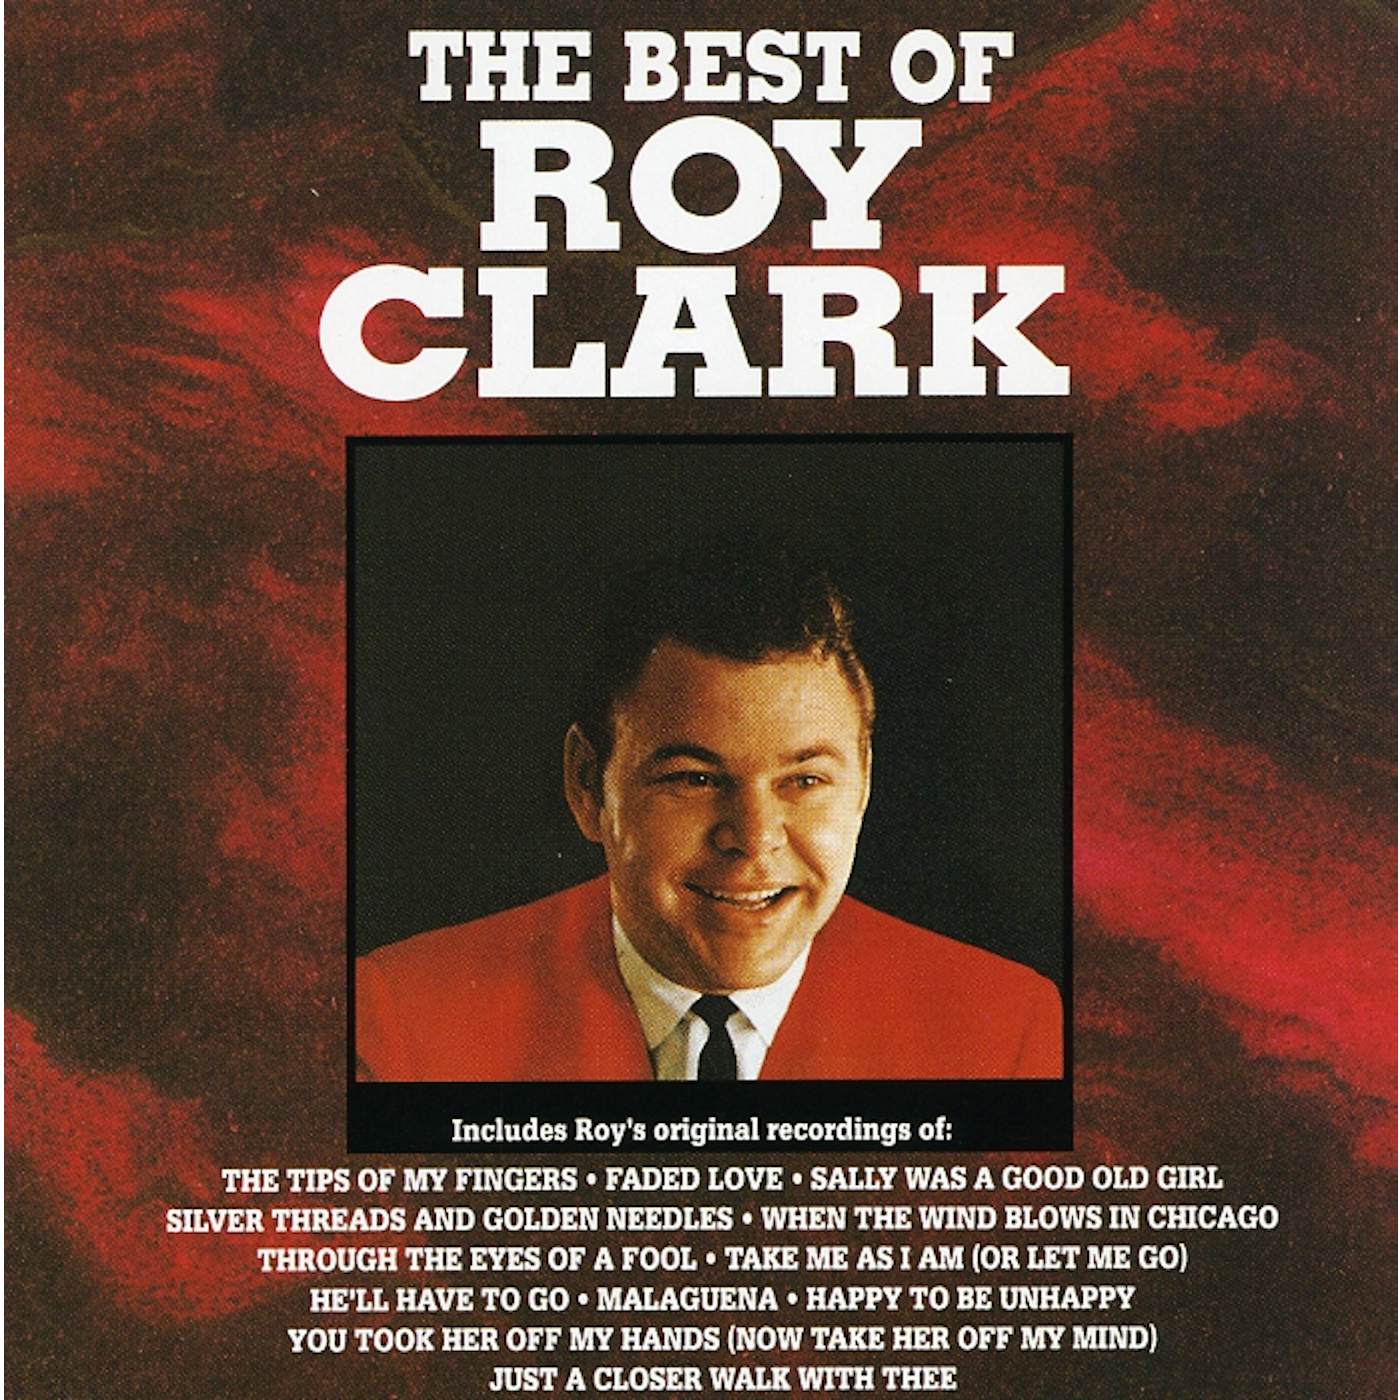 Roy Clark BEST OF CD